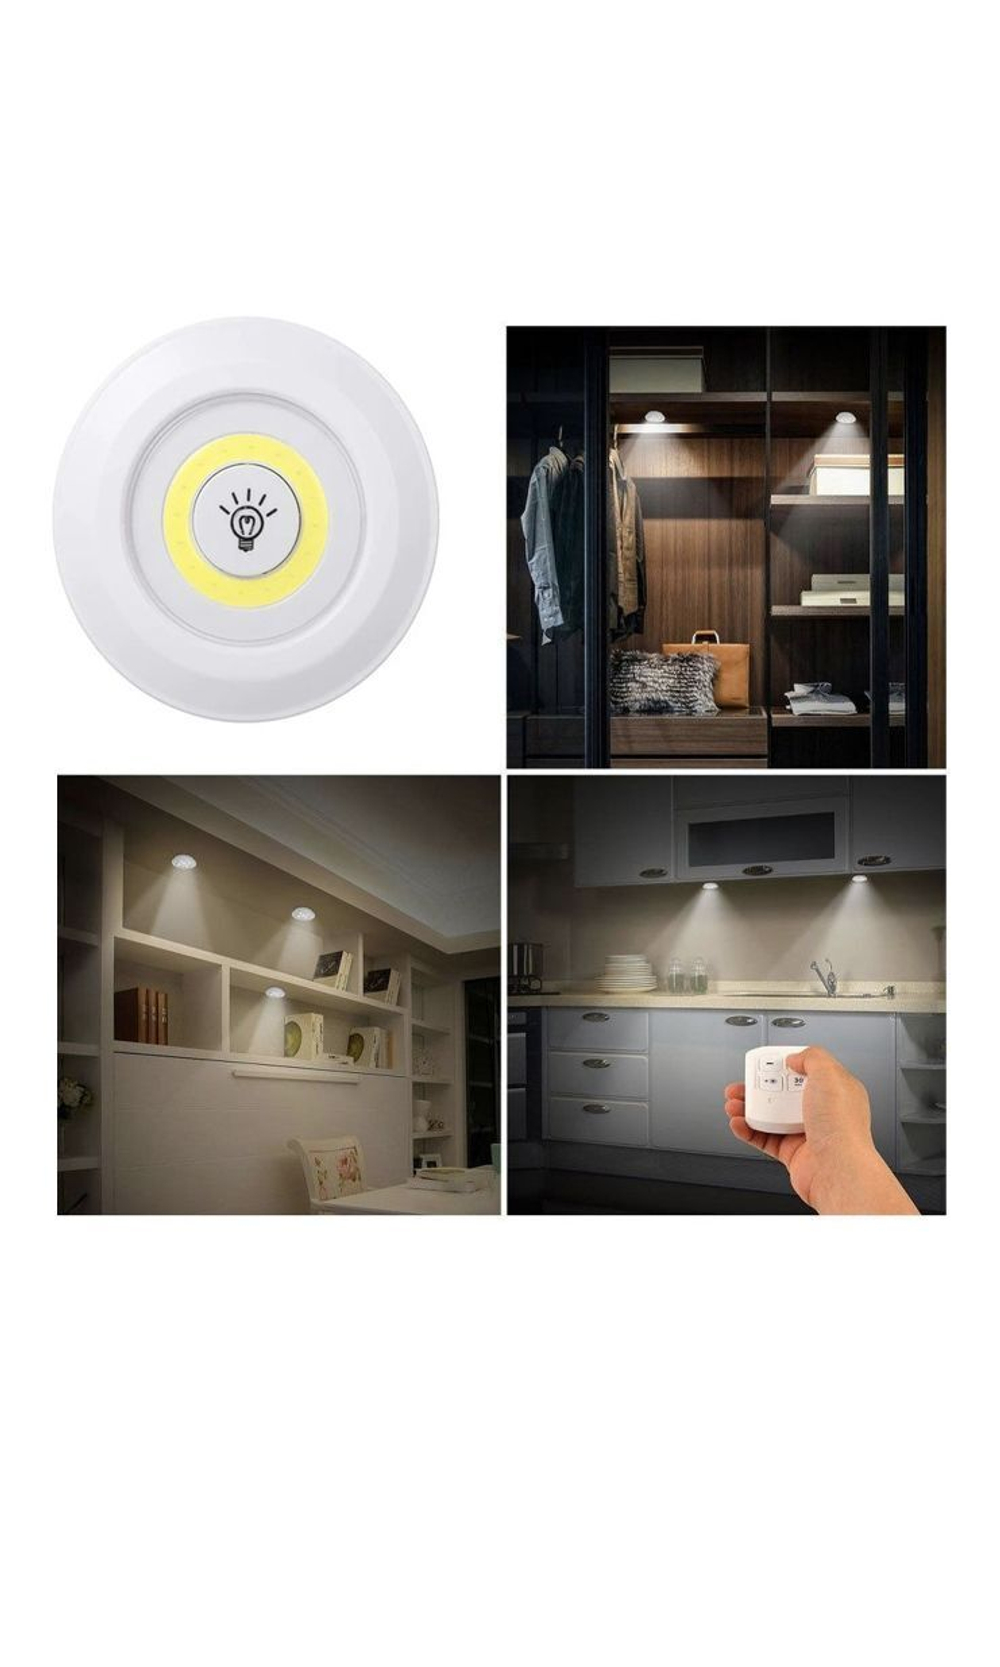 Набор беспроводных LED светильников с пультом управления 3 шт, Светодиодная подсветка для кухни, под шкафы